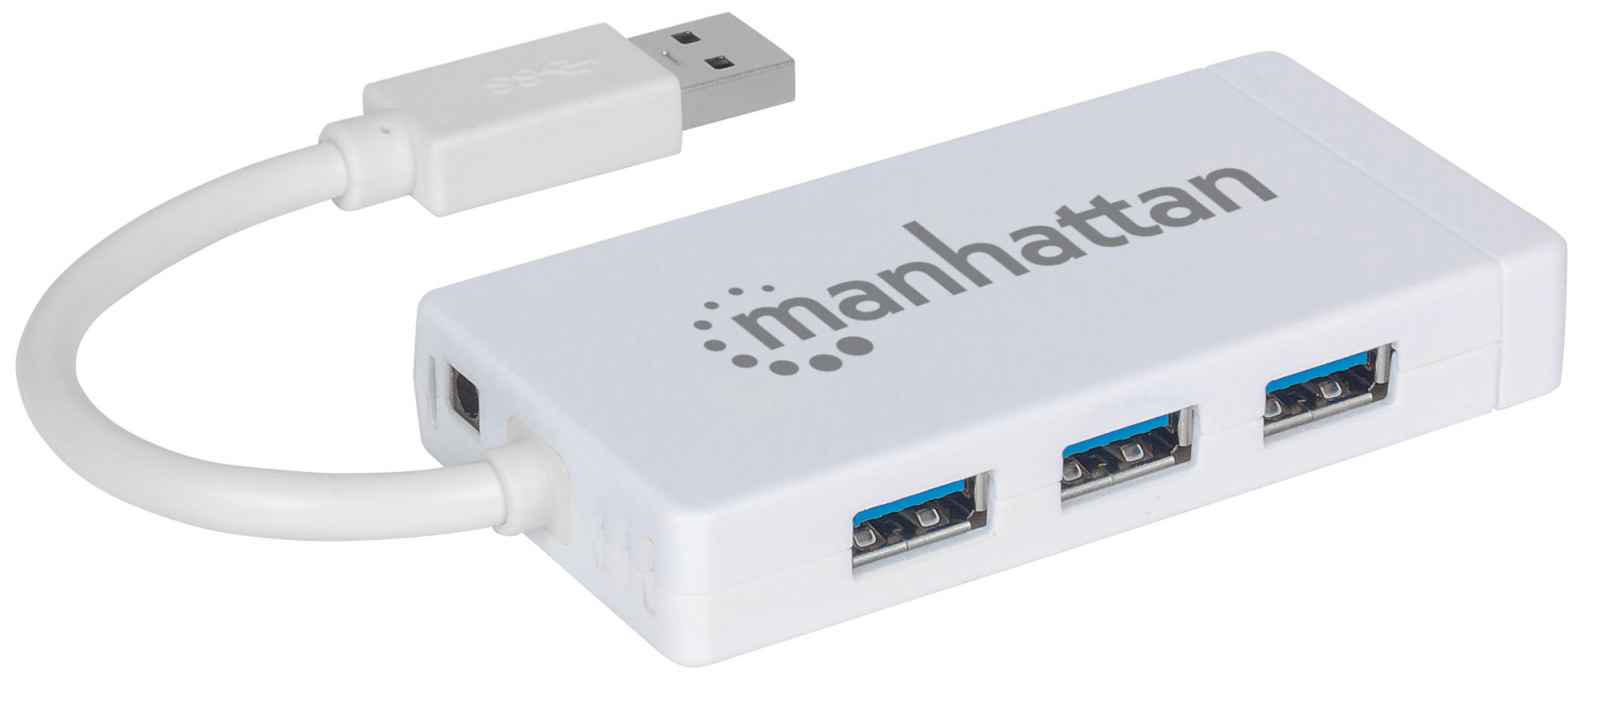 Hub USB alimentado, adaptador USB-C de 10 puertos de datos USB Hub aus Zum  Laden und zur con cable extendido de 3 pies, carga no compatible, puertos